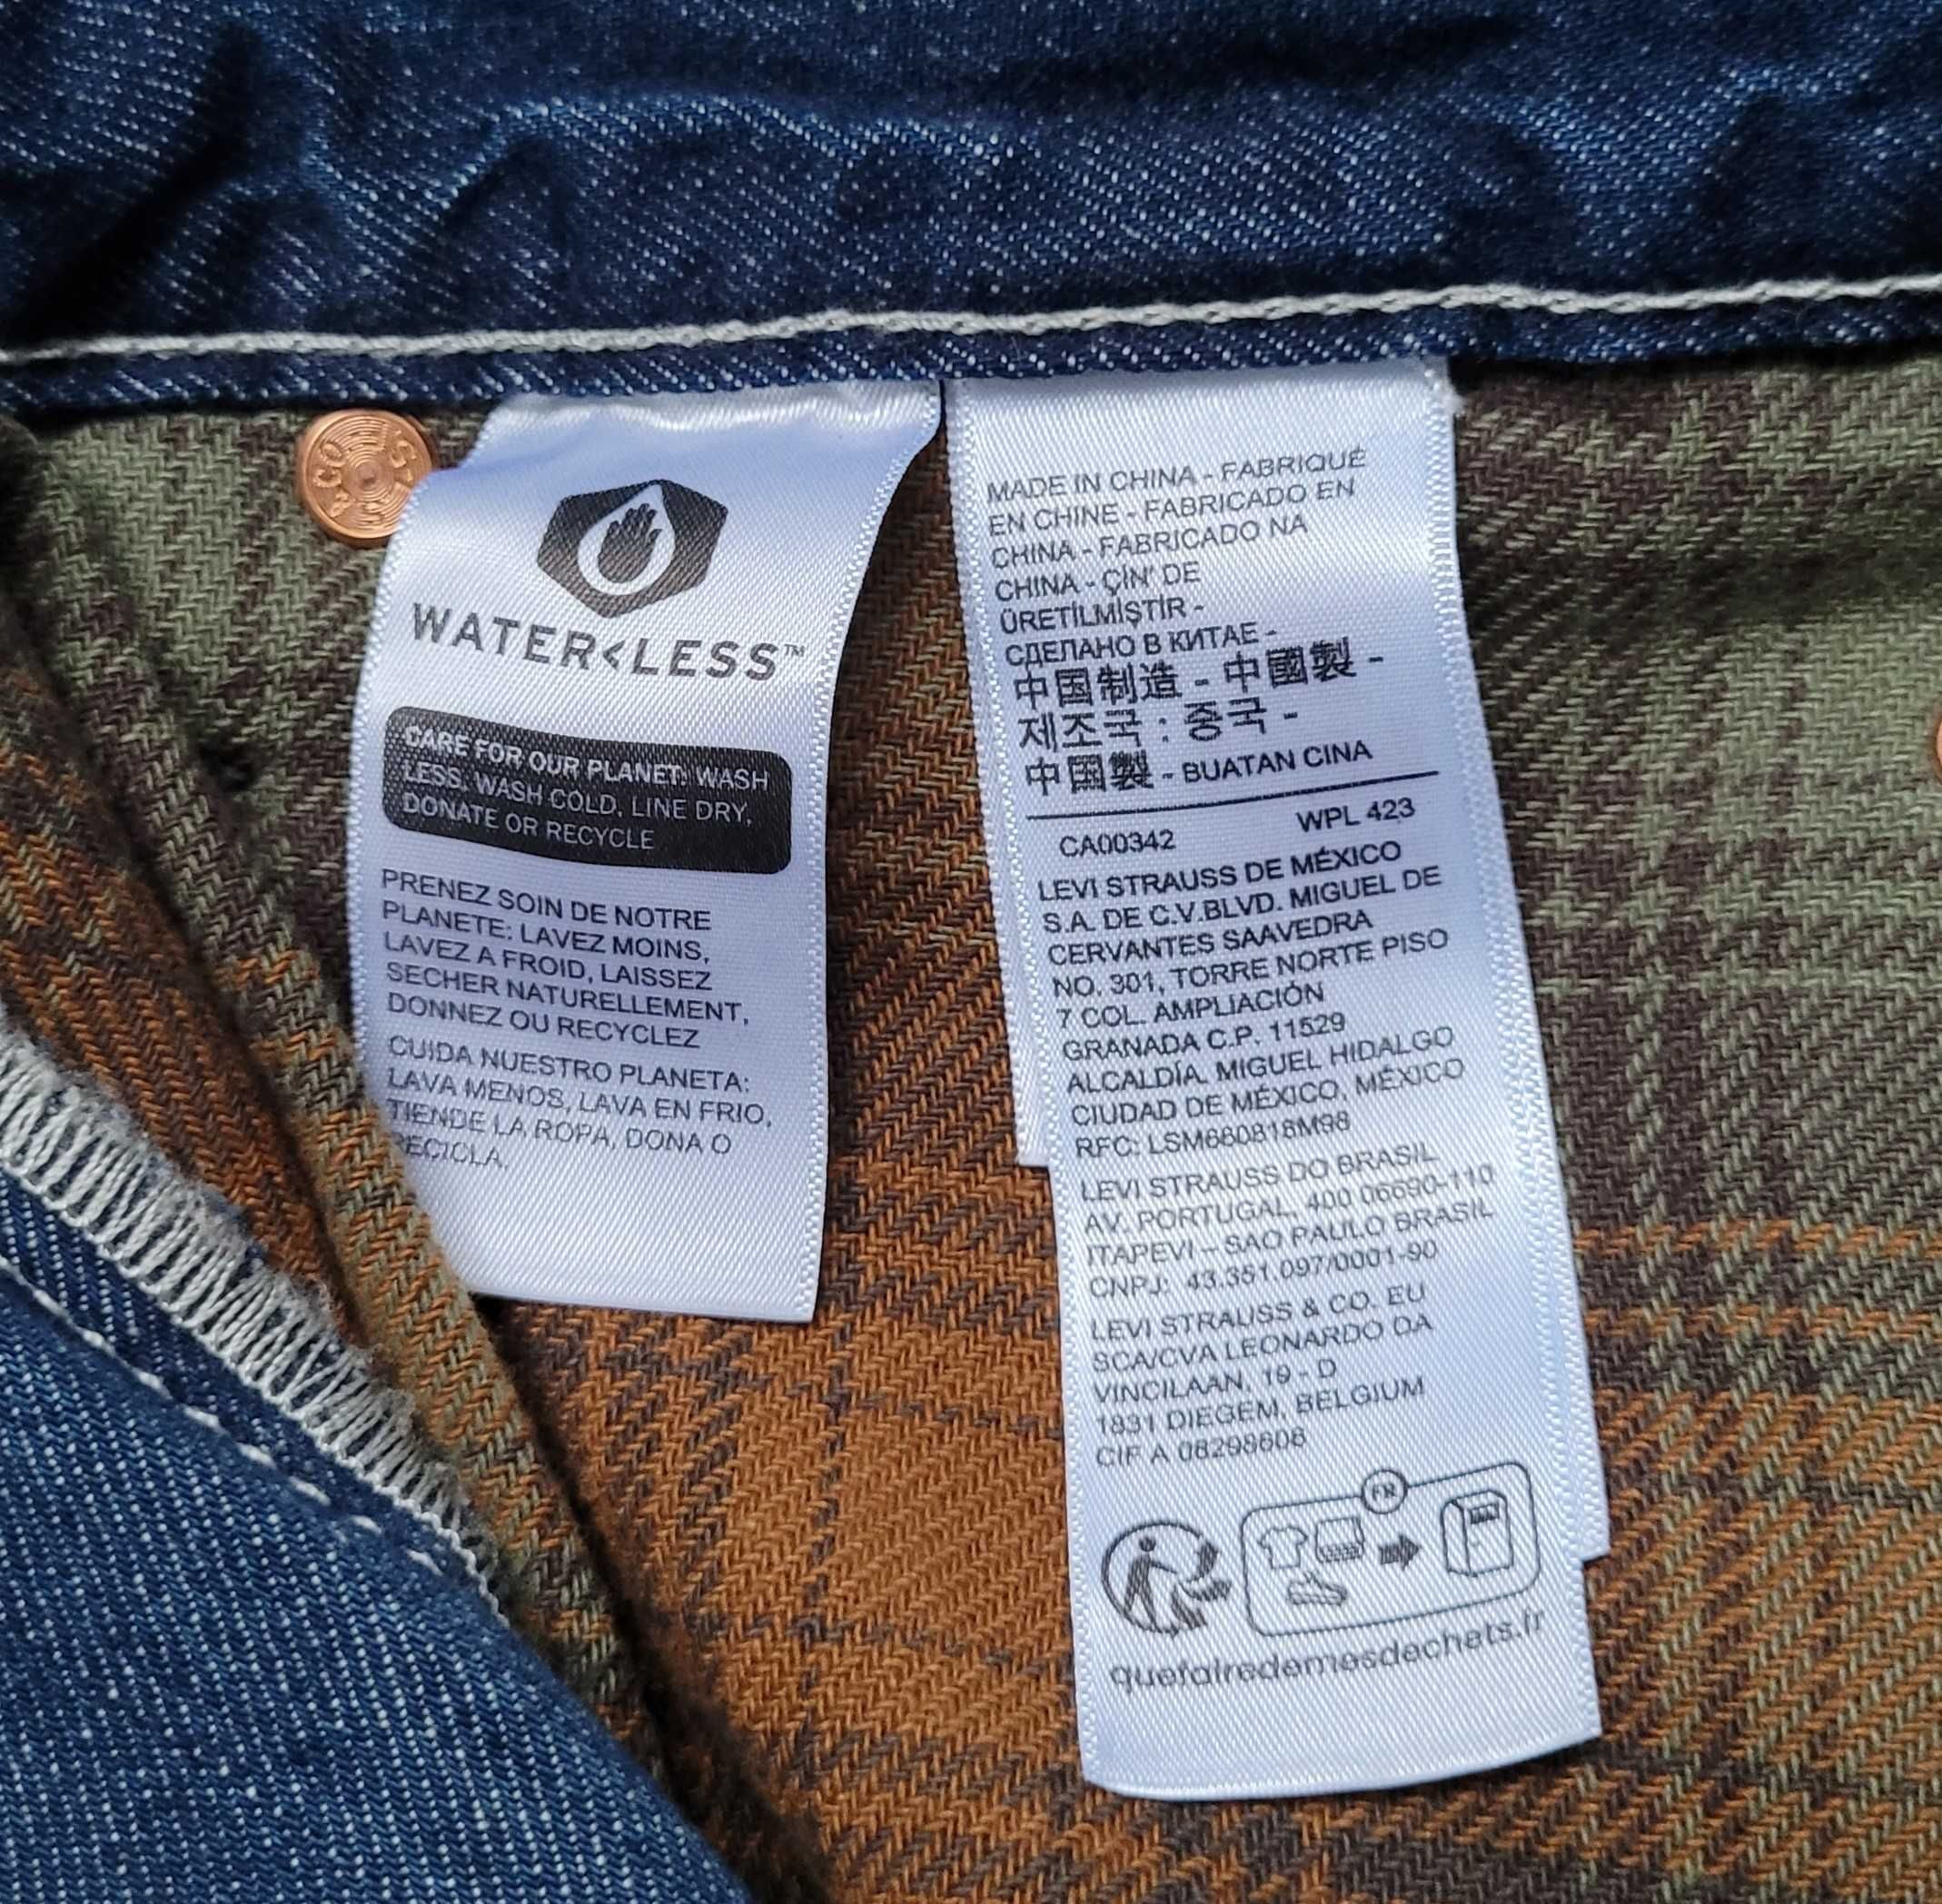 jeansy Levi's dżinsy 568 Stay Loose 33/34 100% bawełna grube W33/L34